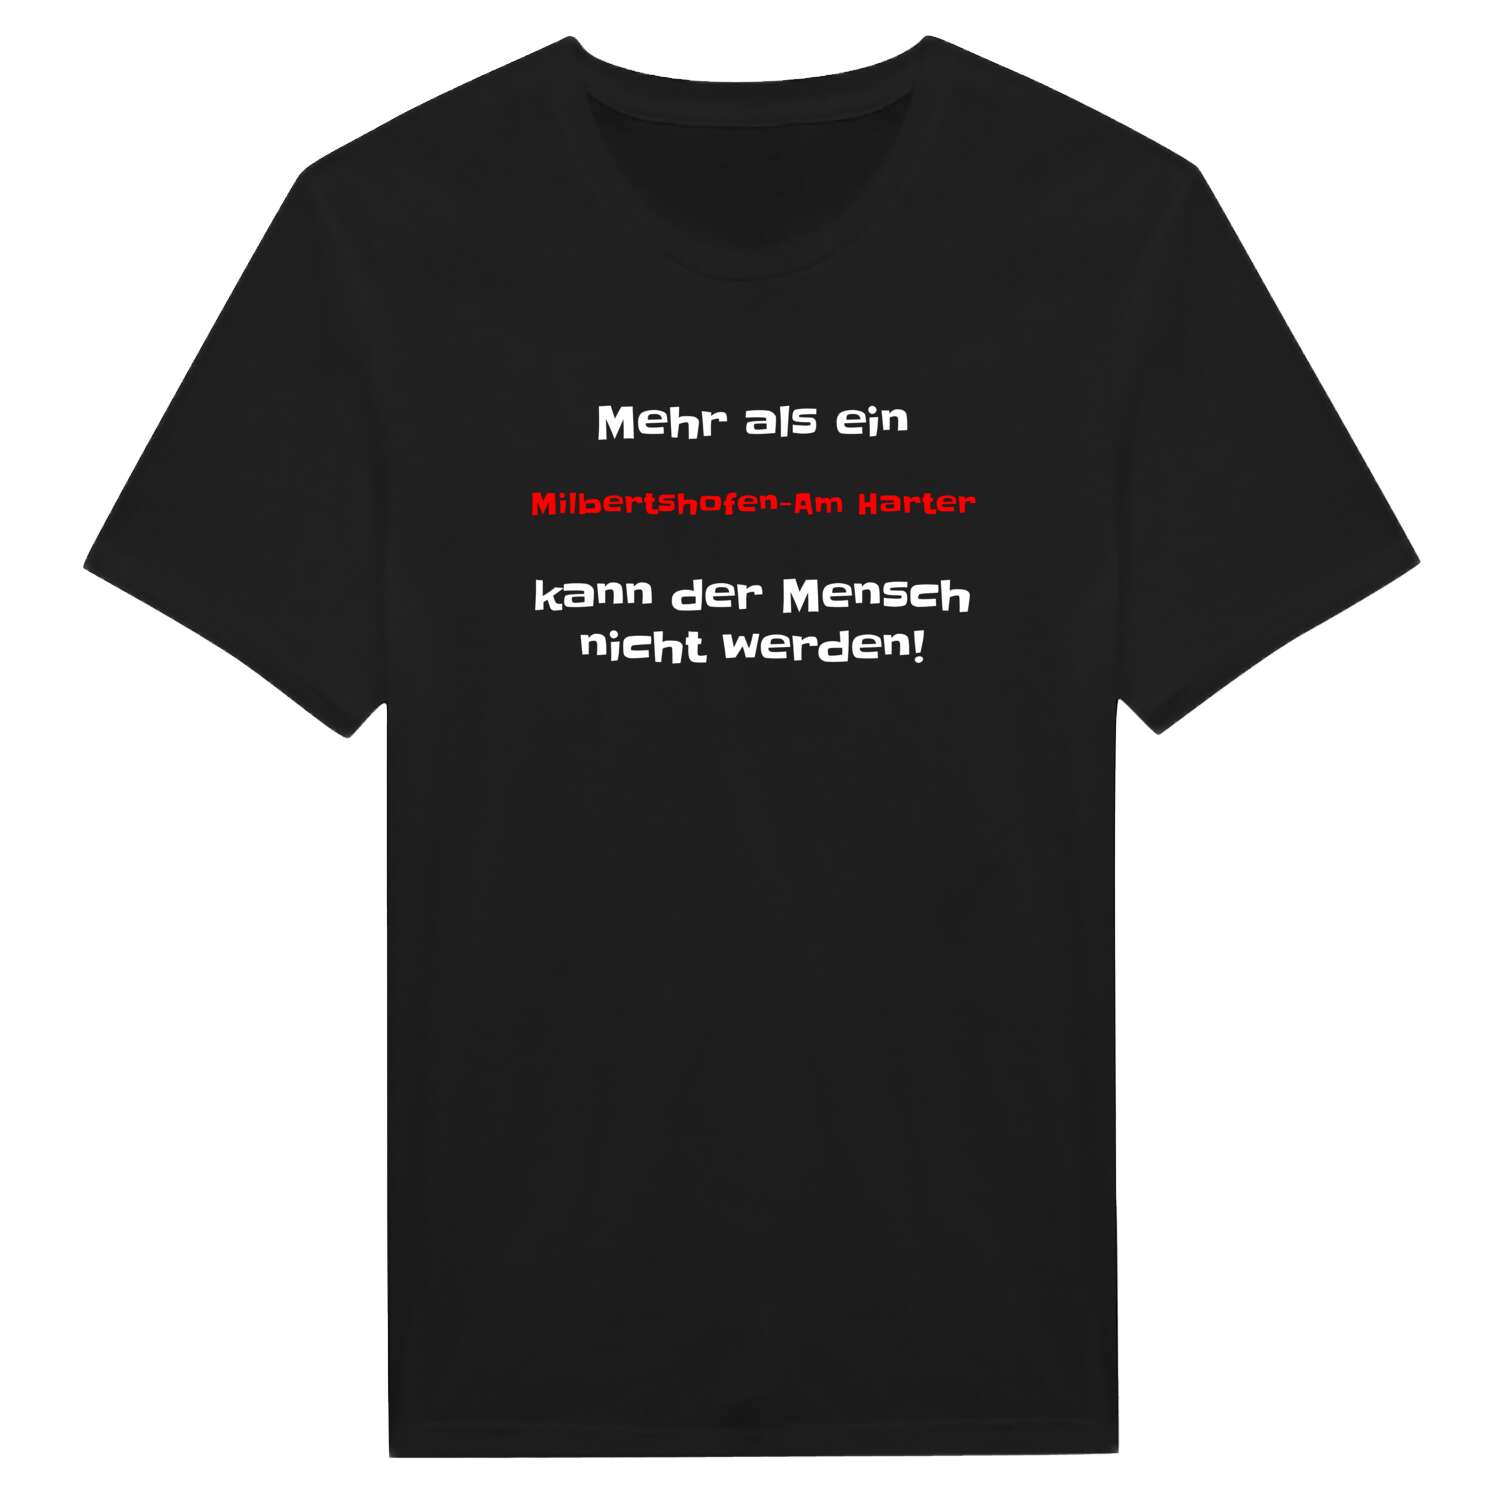 Milbertshofen-Am Hart T-Shirt »Mehr als ein«